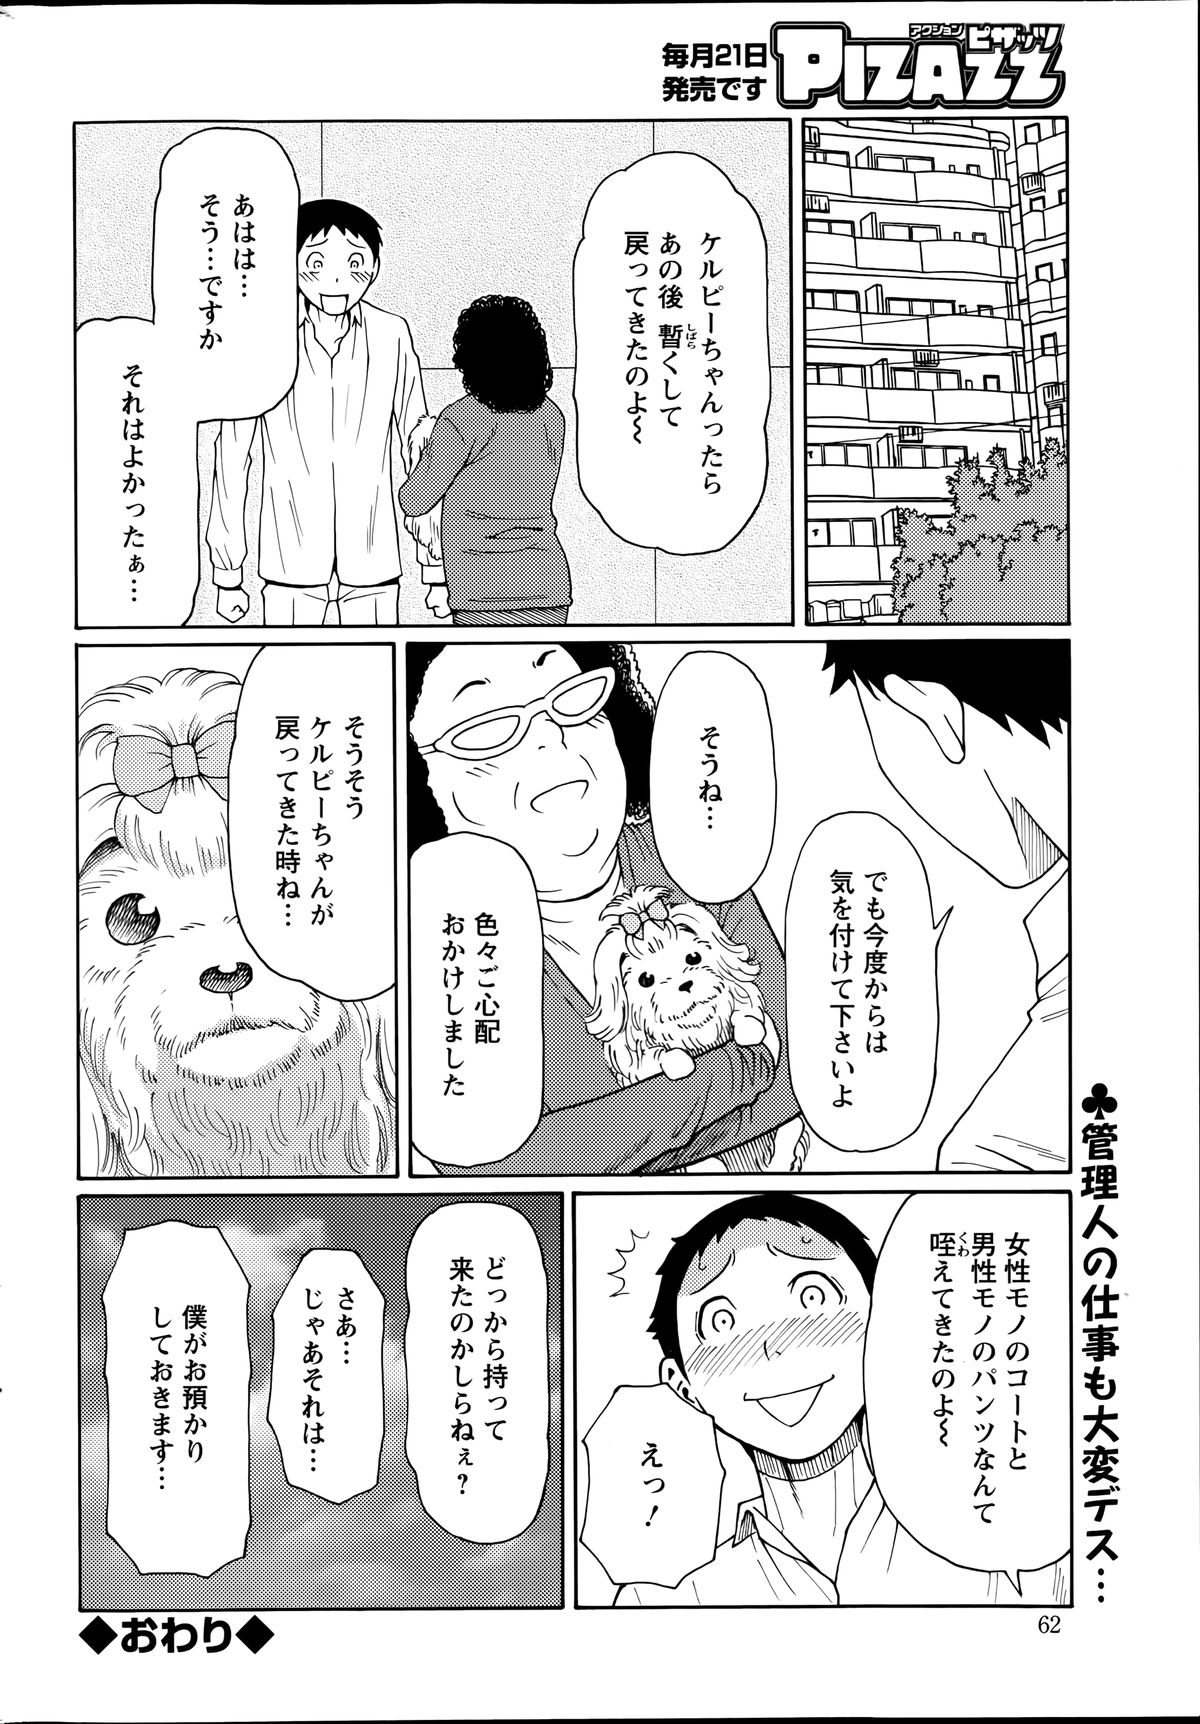 [Takasugi Kou] Madam Palace Ch.1-4 page 76 full